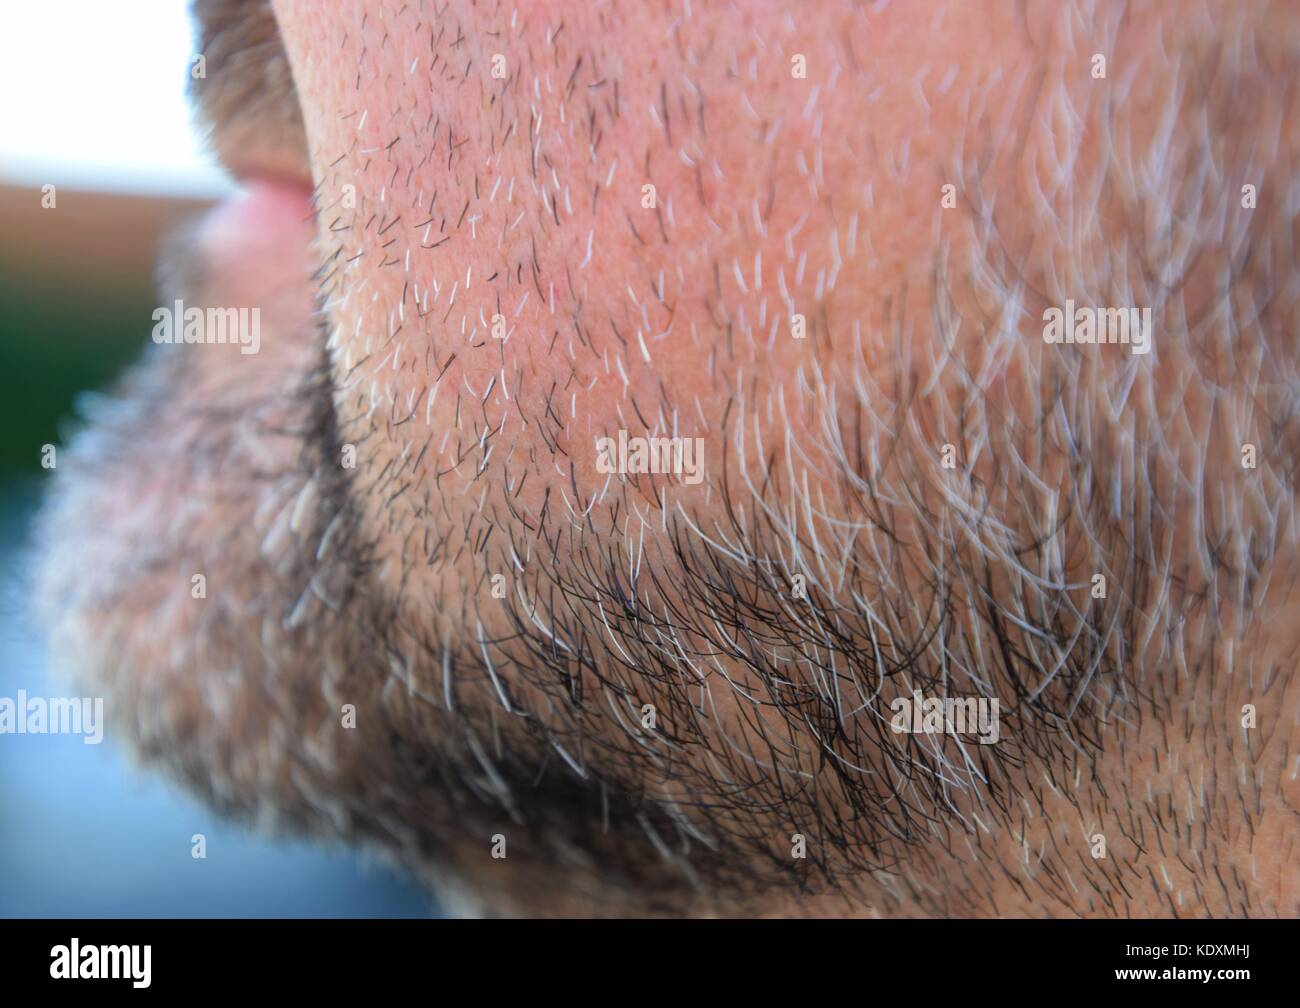 Ältere Menschen, graue und schwarze Stoppeln im Gesicht eines Mannes,  attraktive Bart von einem älteren Mann vor der Rasur Stockfotografie - Alamy